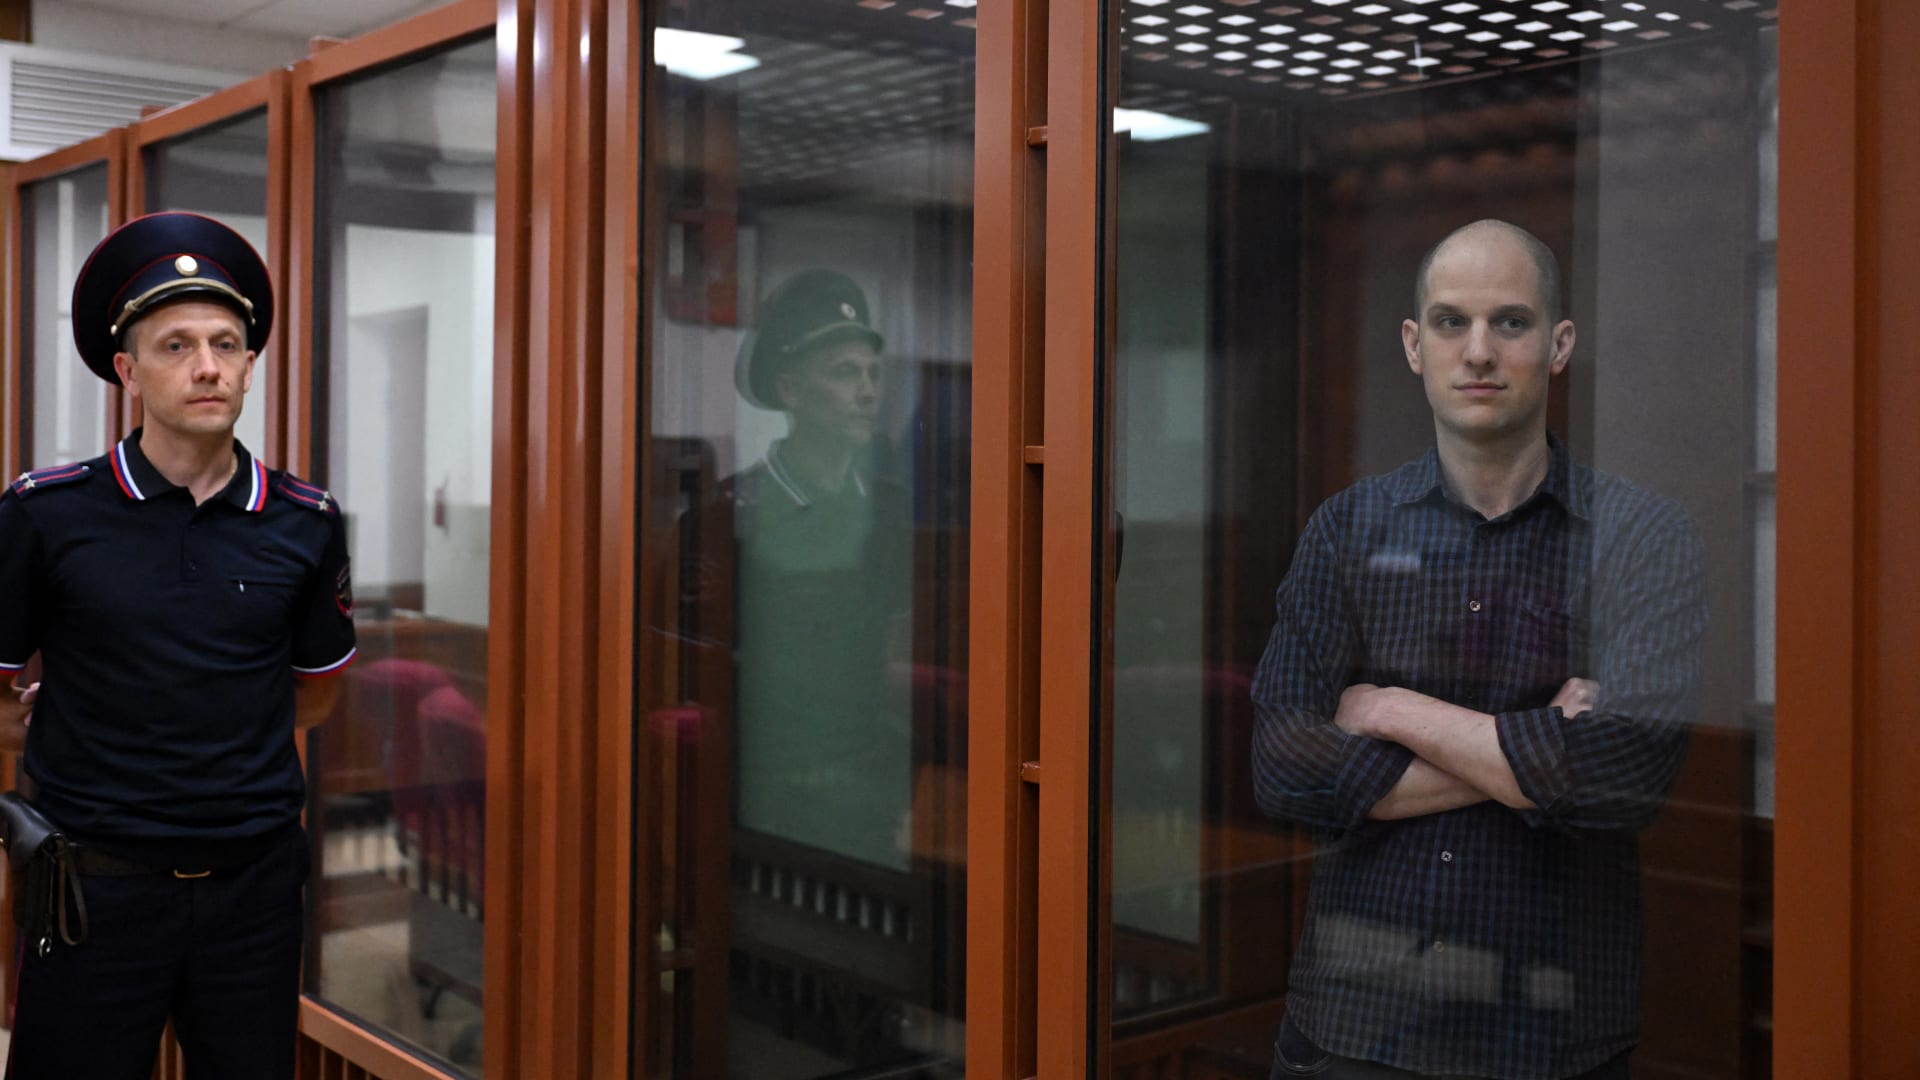 تحتجزه روسيا في سجن سيء السمعة.. آخر تطورات قضية الصحفي الأمريكي غيرشكوفيتش